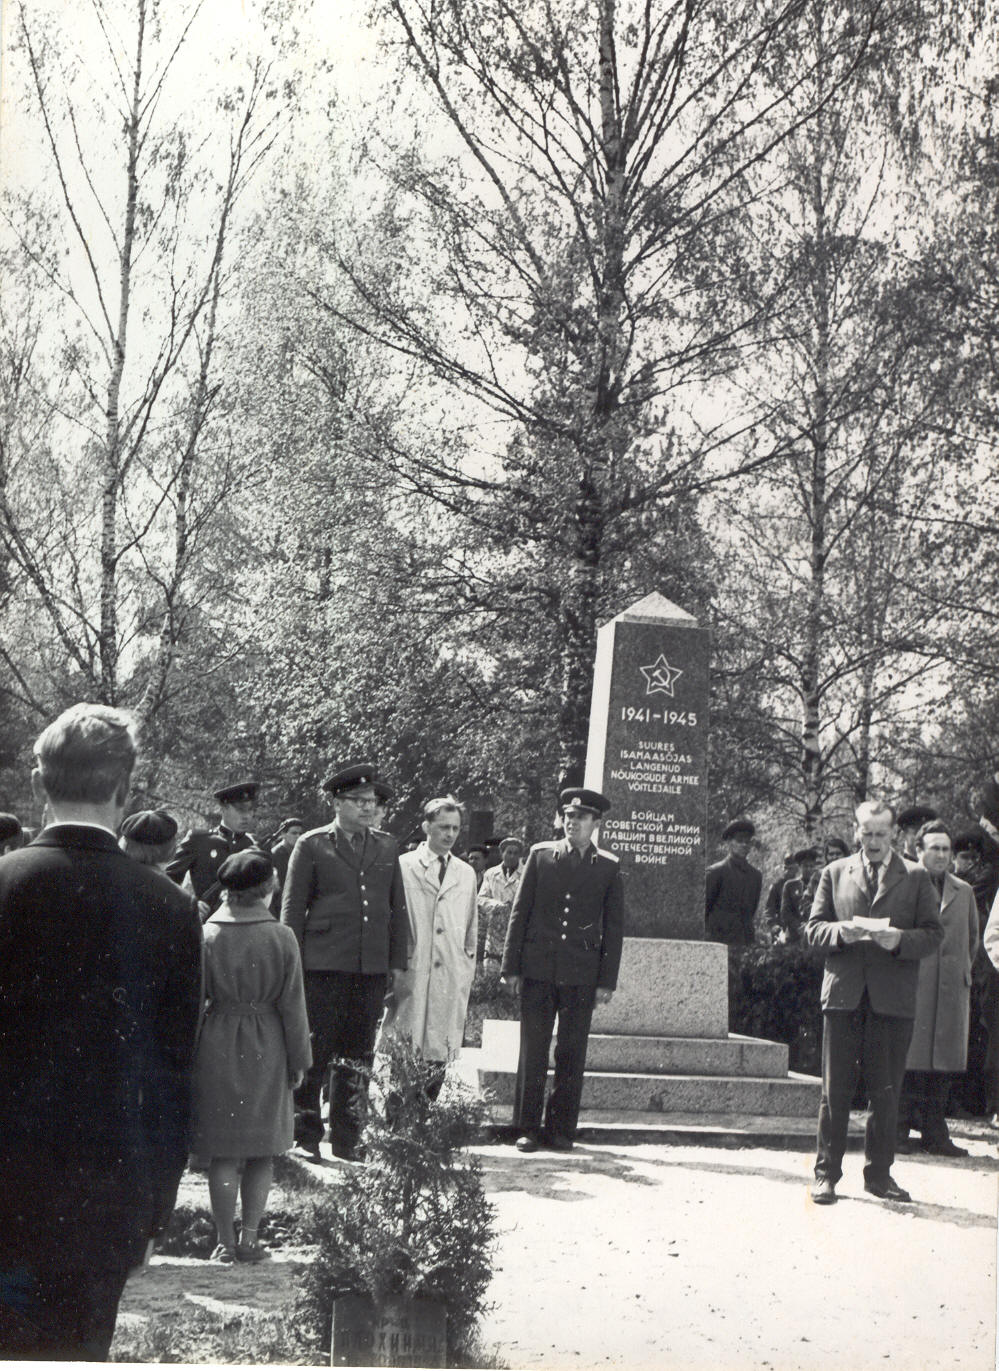 Foto. Suures Isamaasõjas langenute vennaskalmistu Võrus. Mälestusmiiting 13.augustil 1964.a. Kõneleb F. Pärtelpoeg.